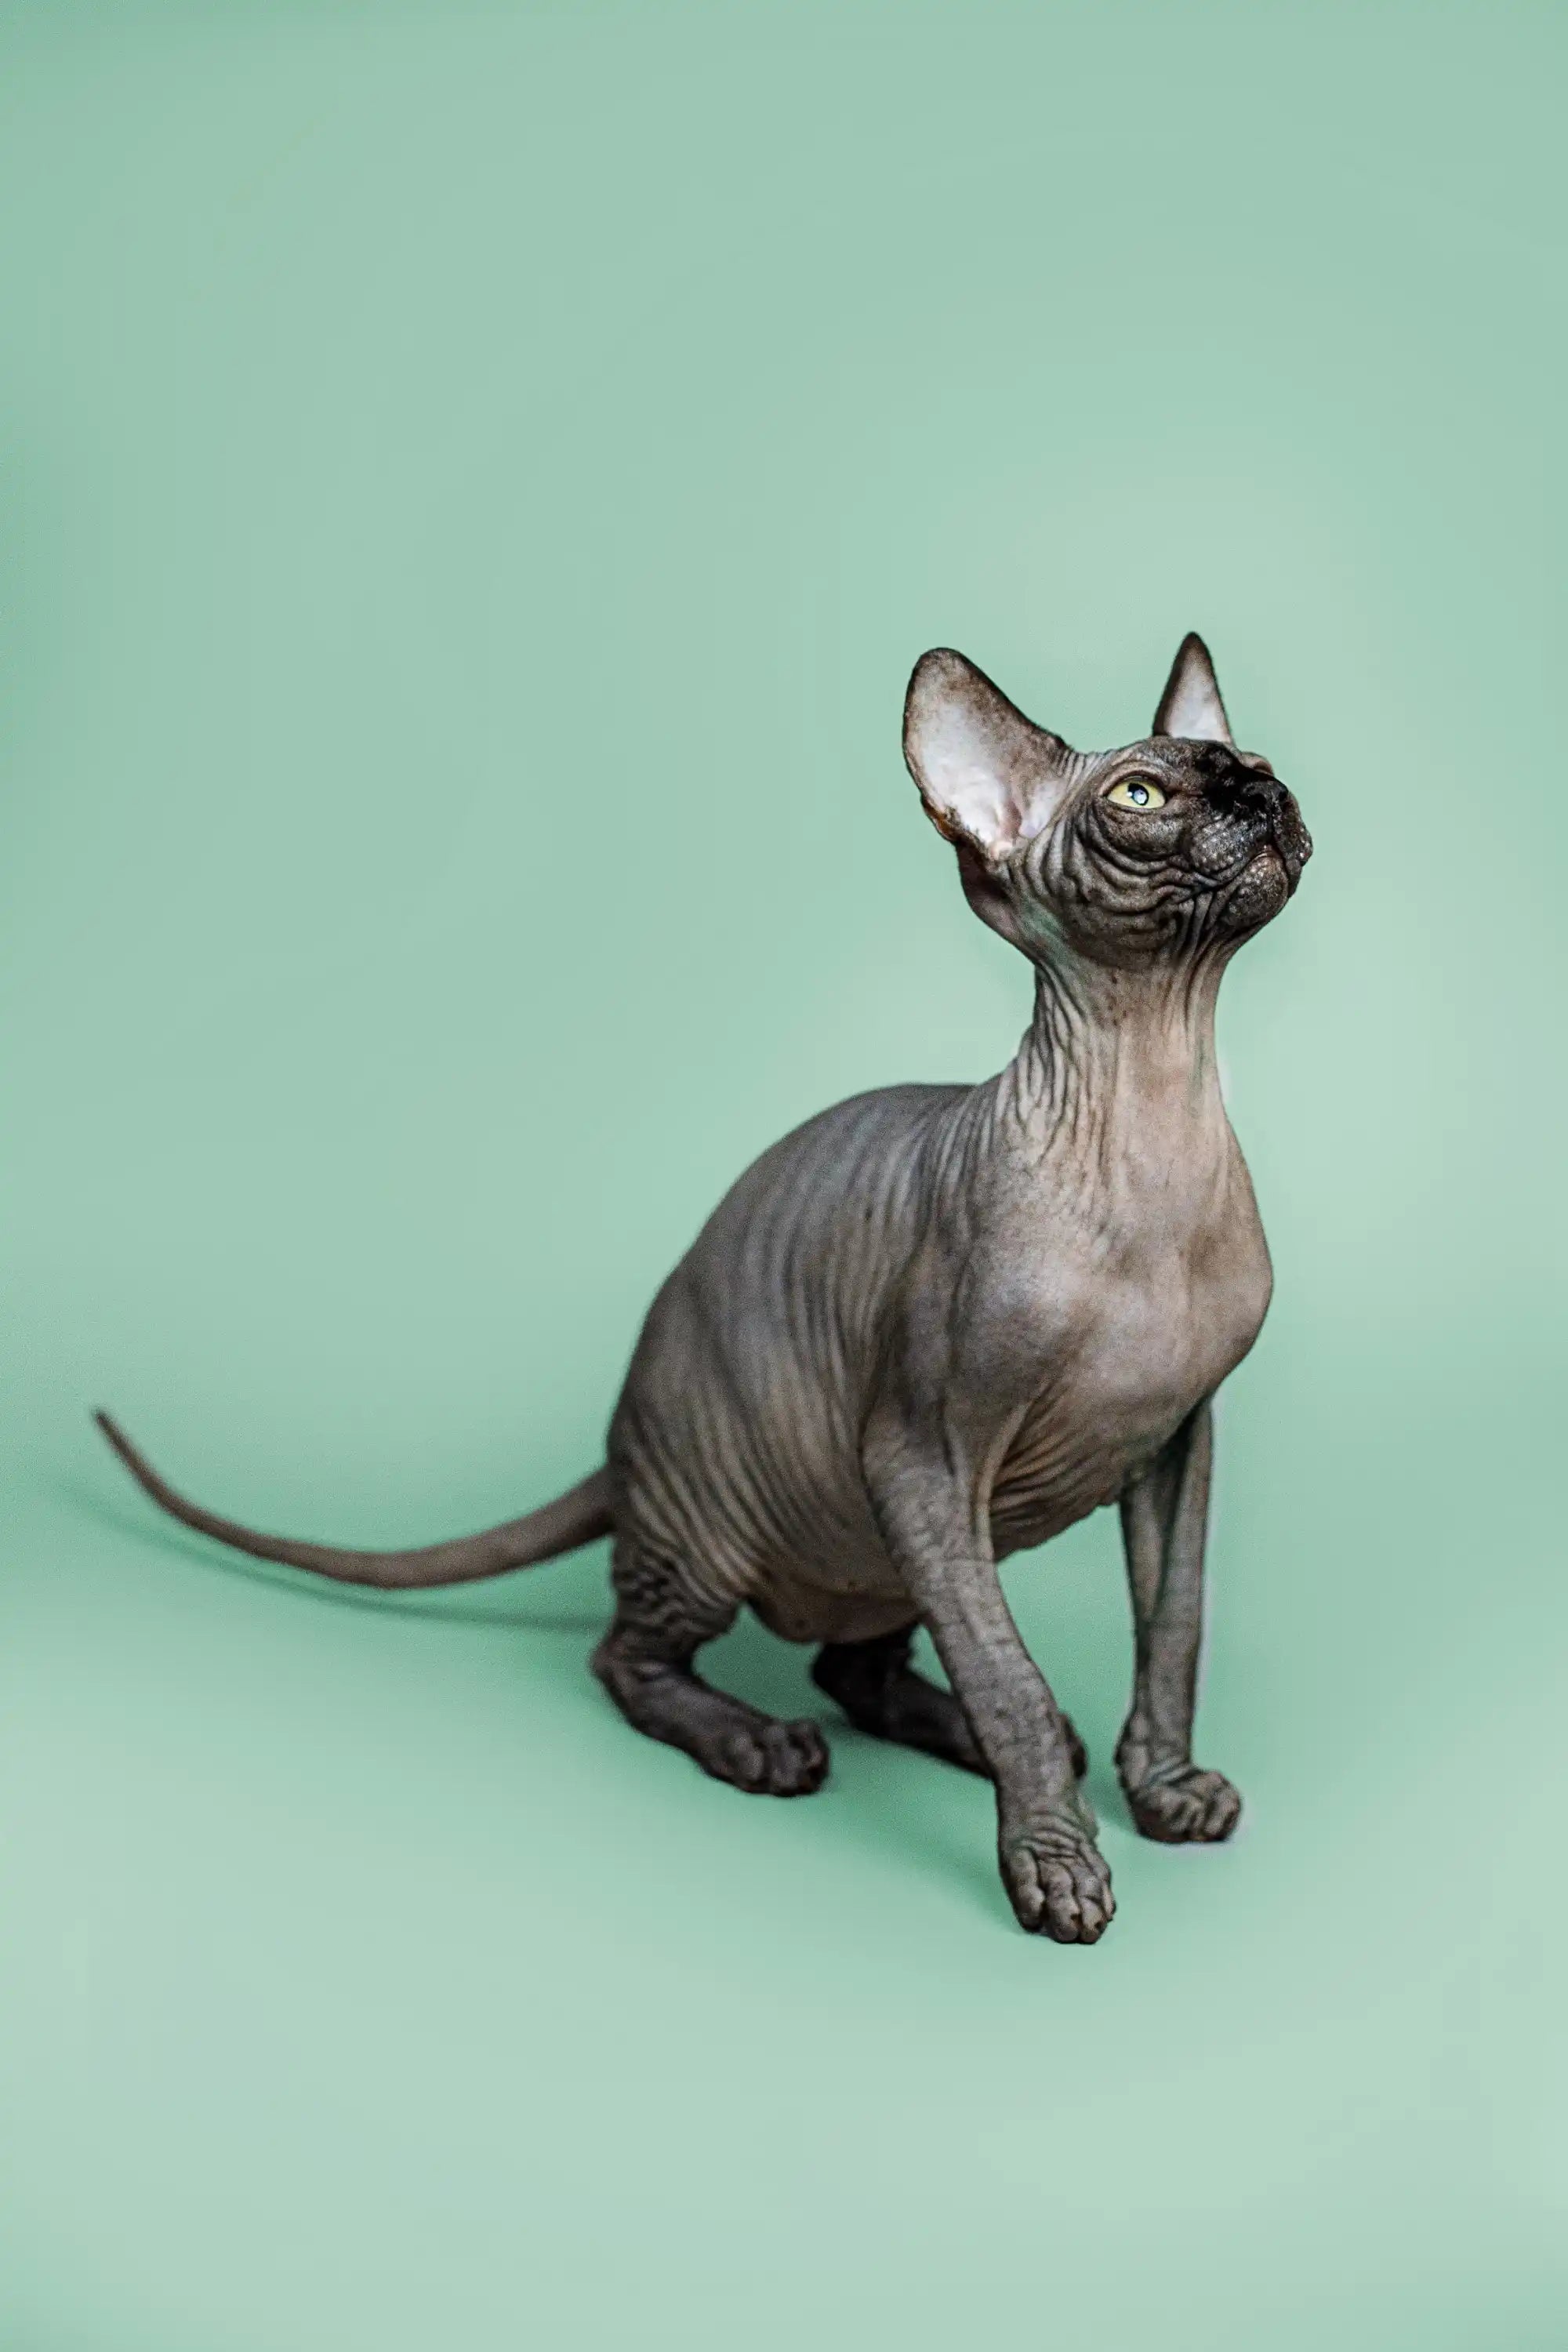 Sphynx Cats for Sale | Kittens For Zephyr | Kitten